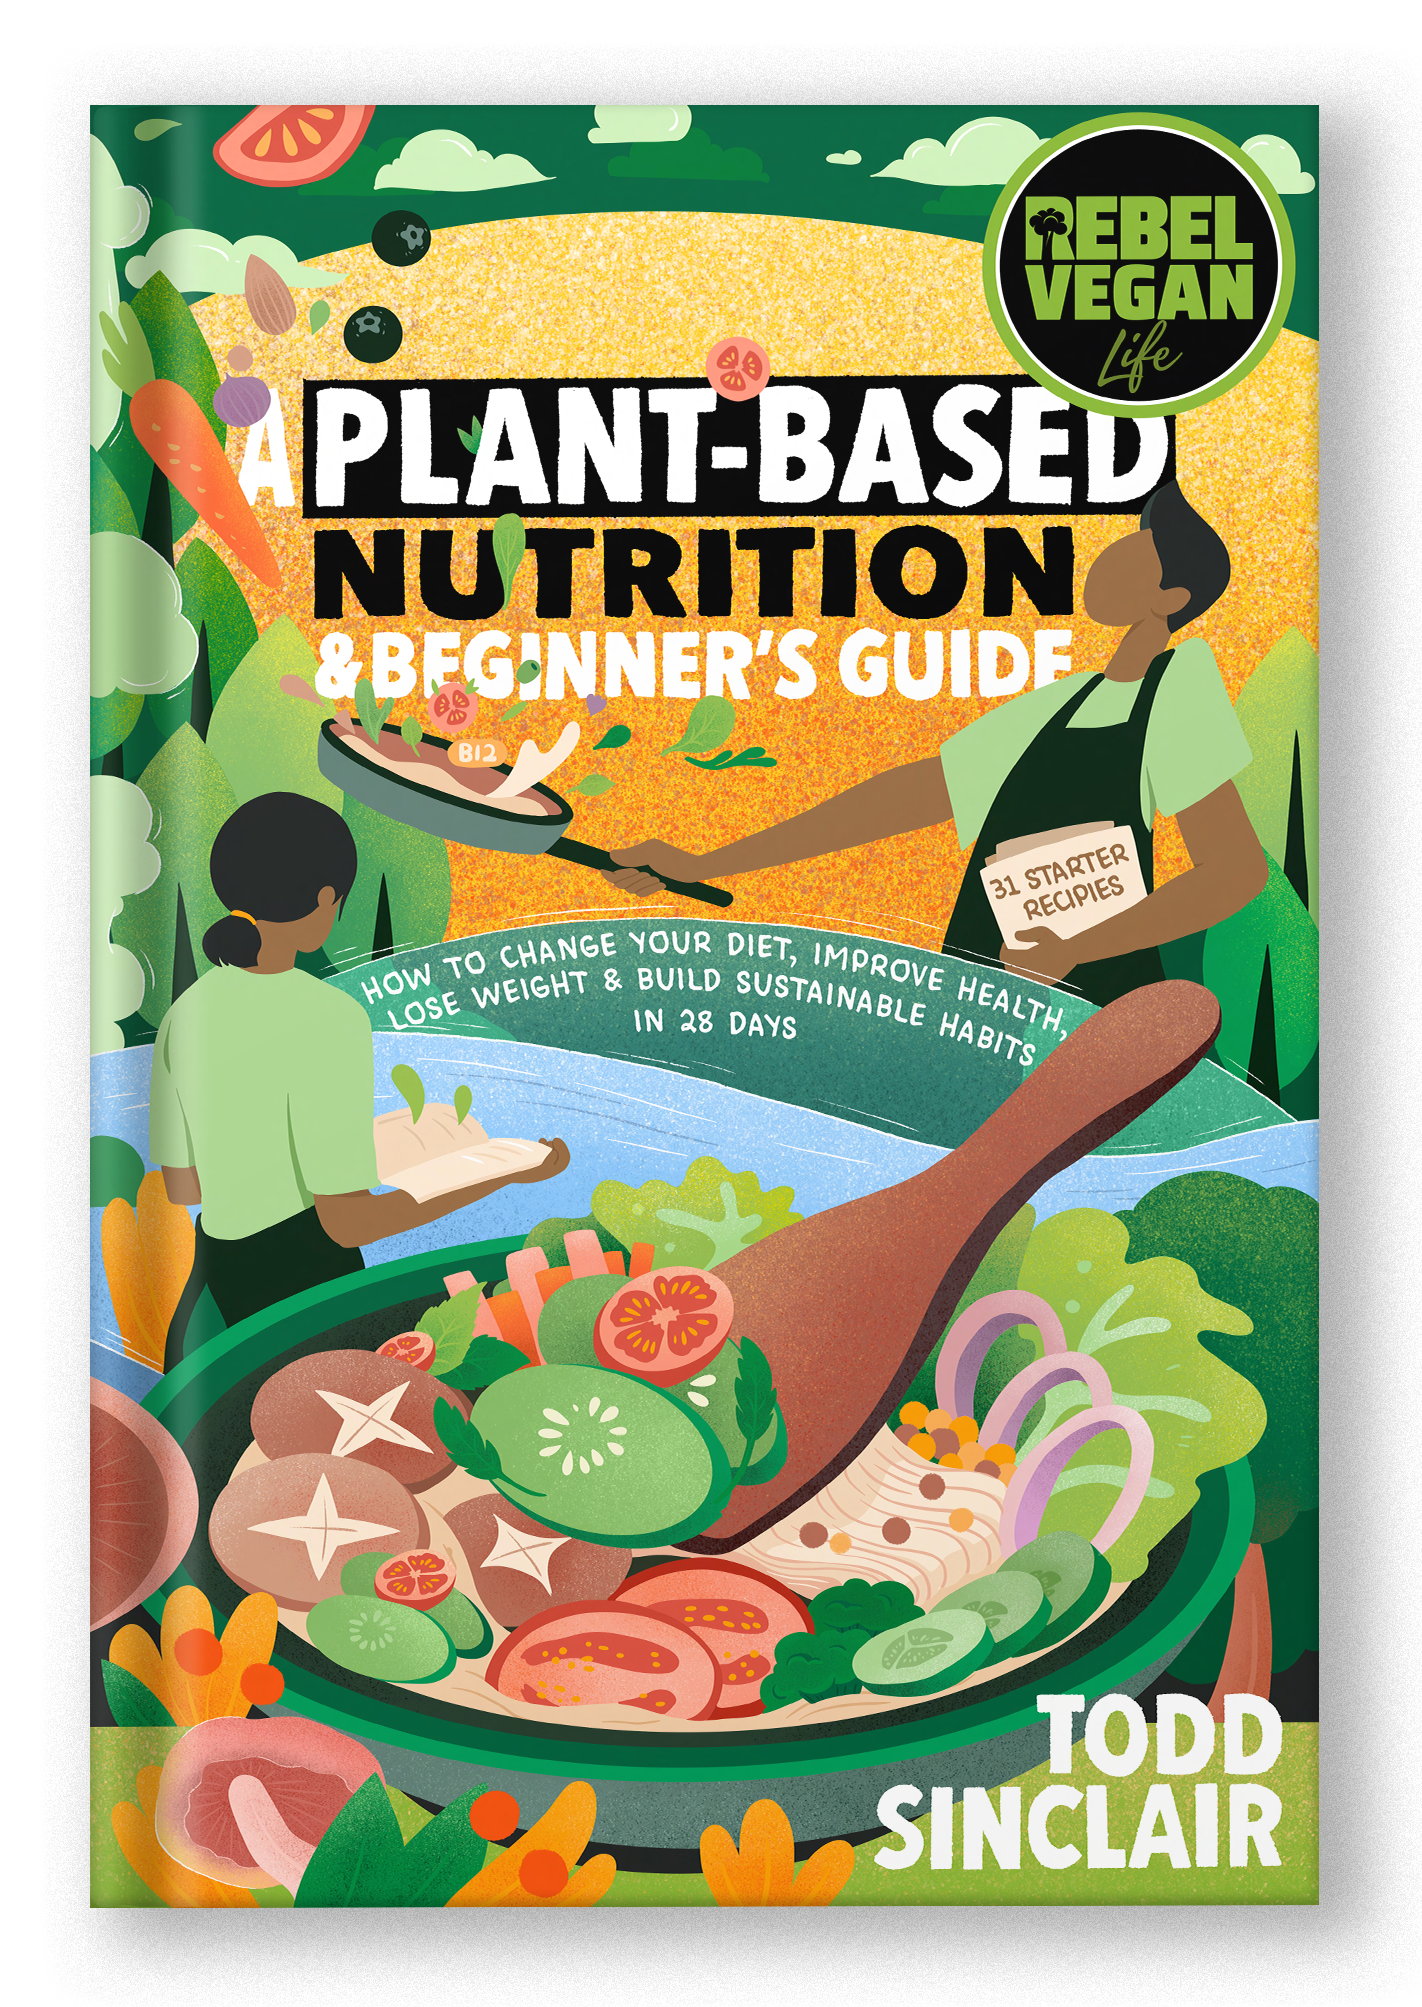 Book Rebel Vegan Life: Plant-Based Nutrition & Beginner's Guide